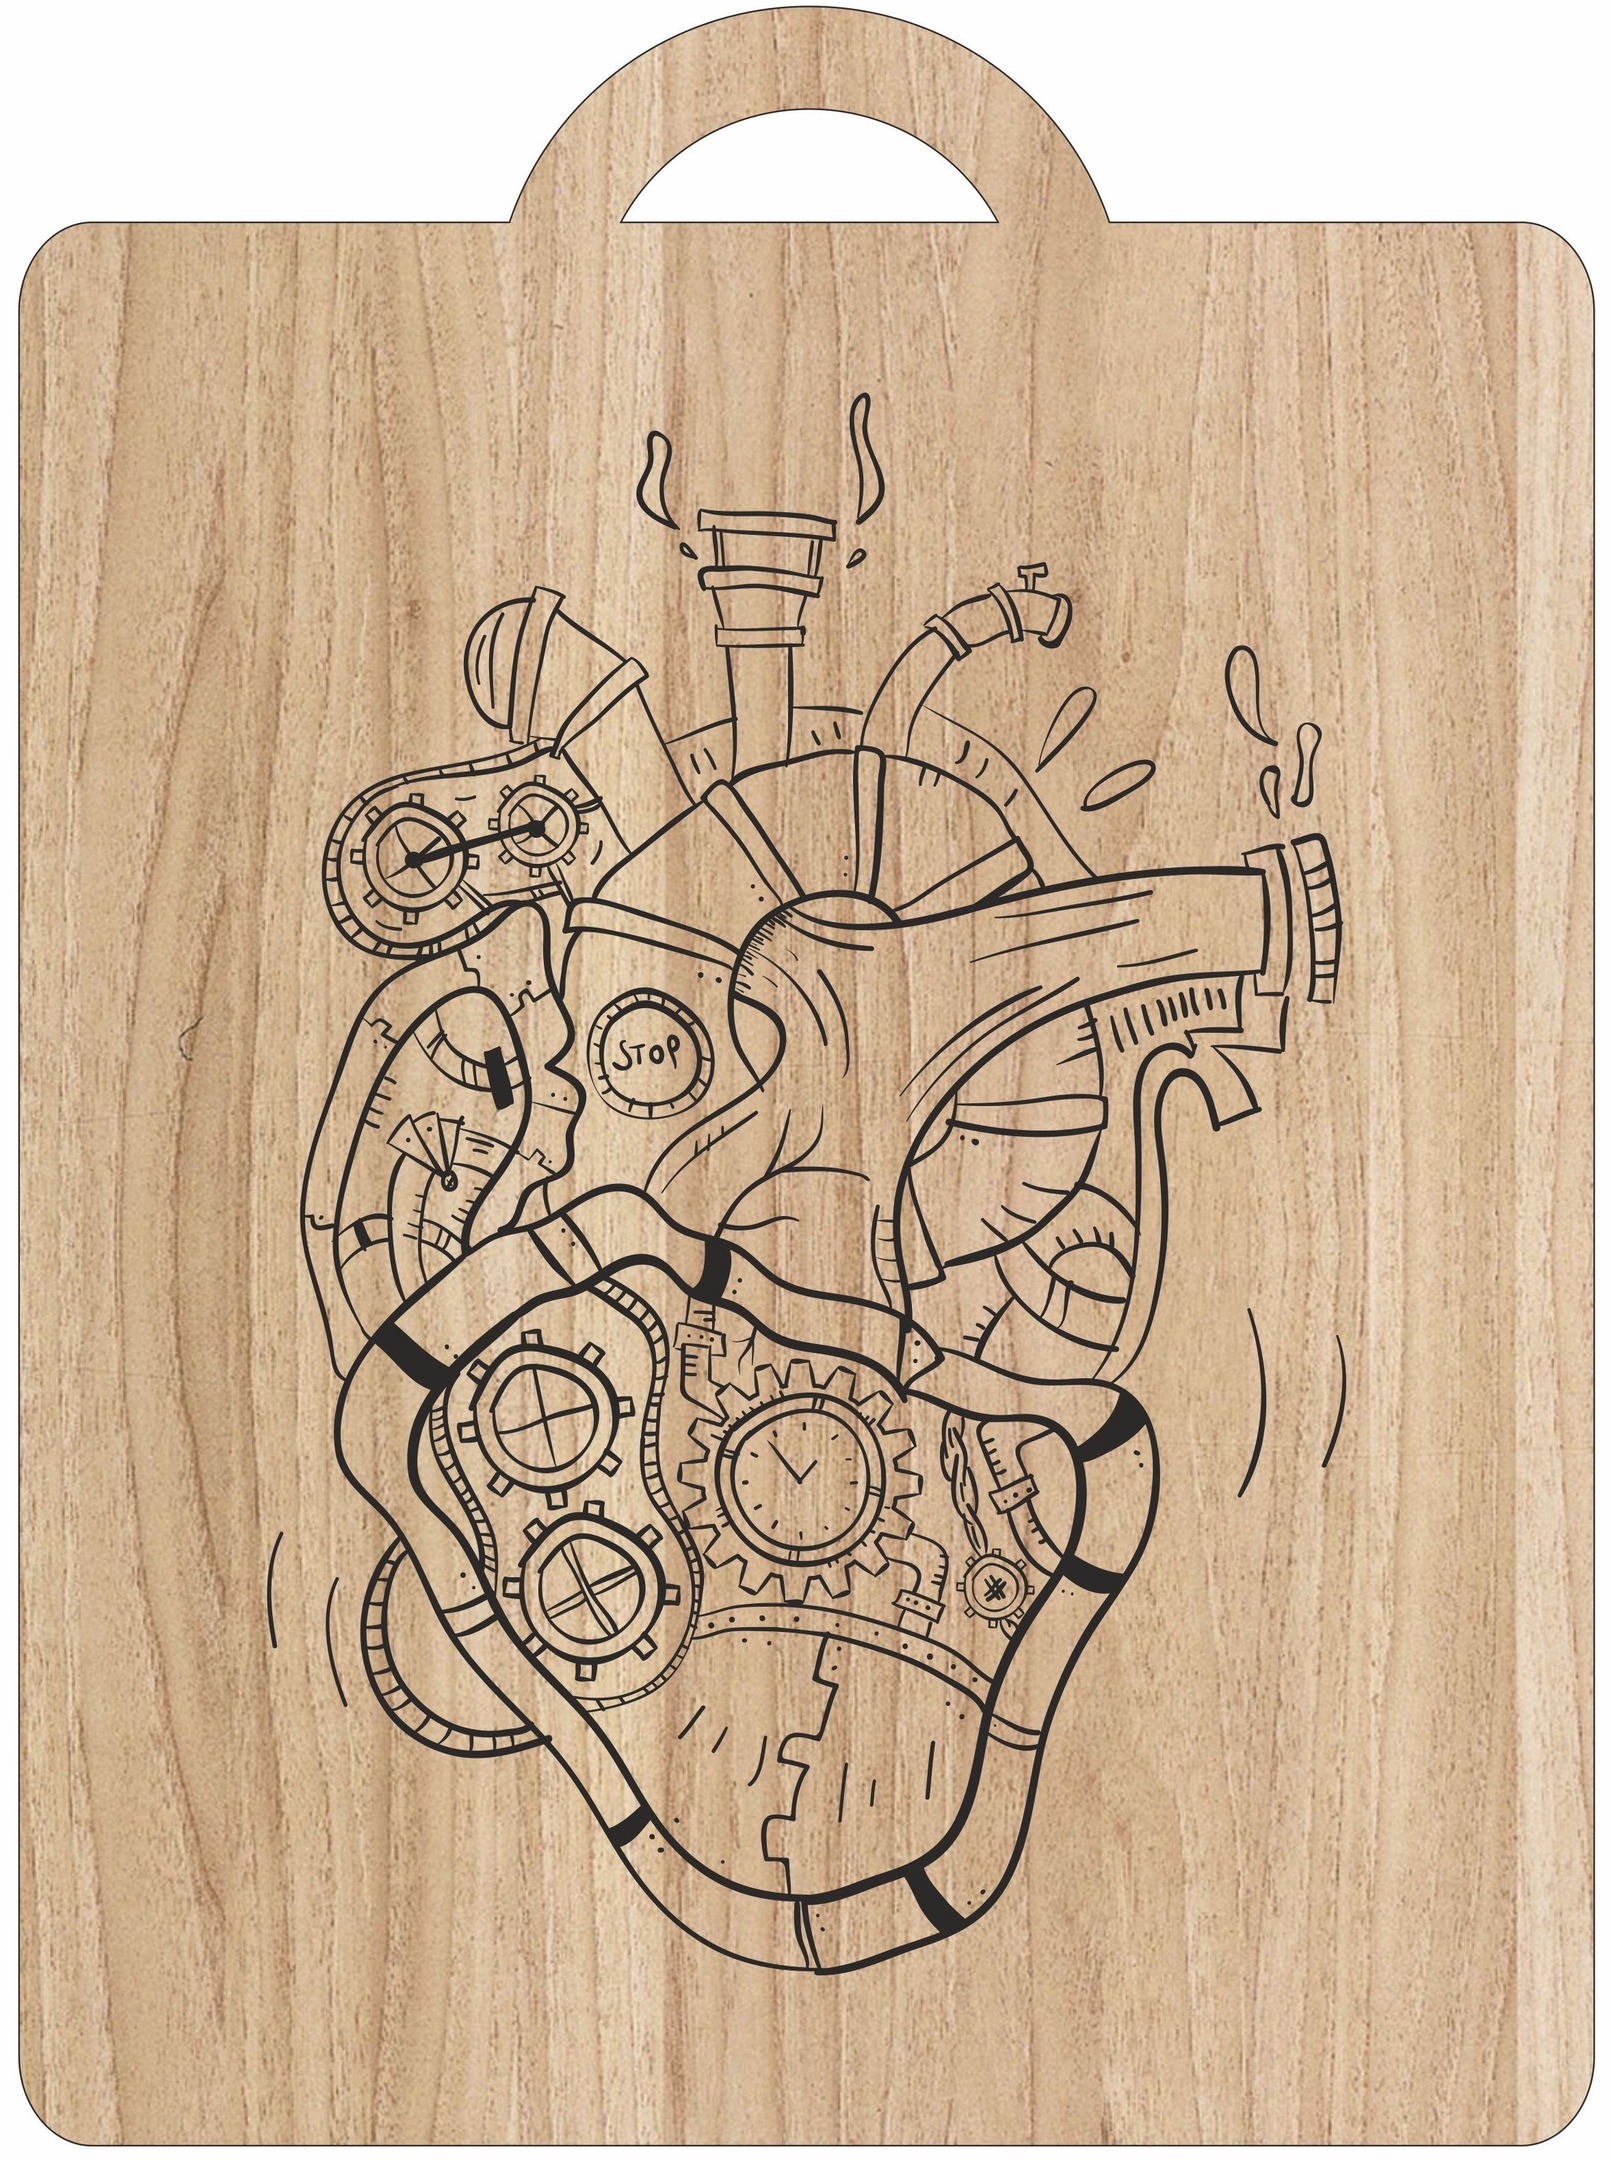 Лазерная гравировка механического сердца на разделочной доске